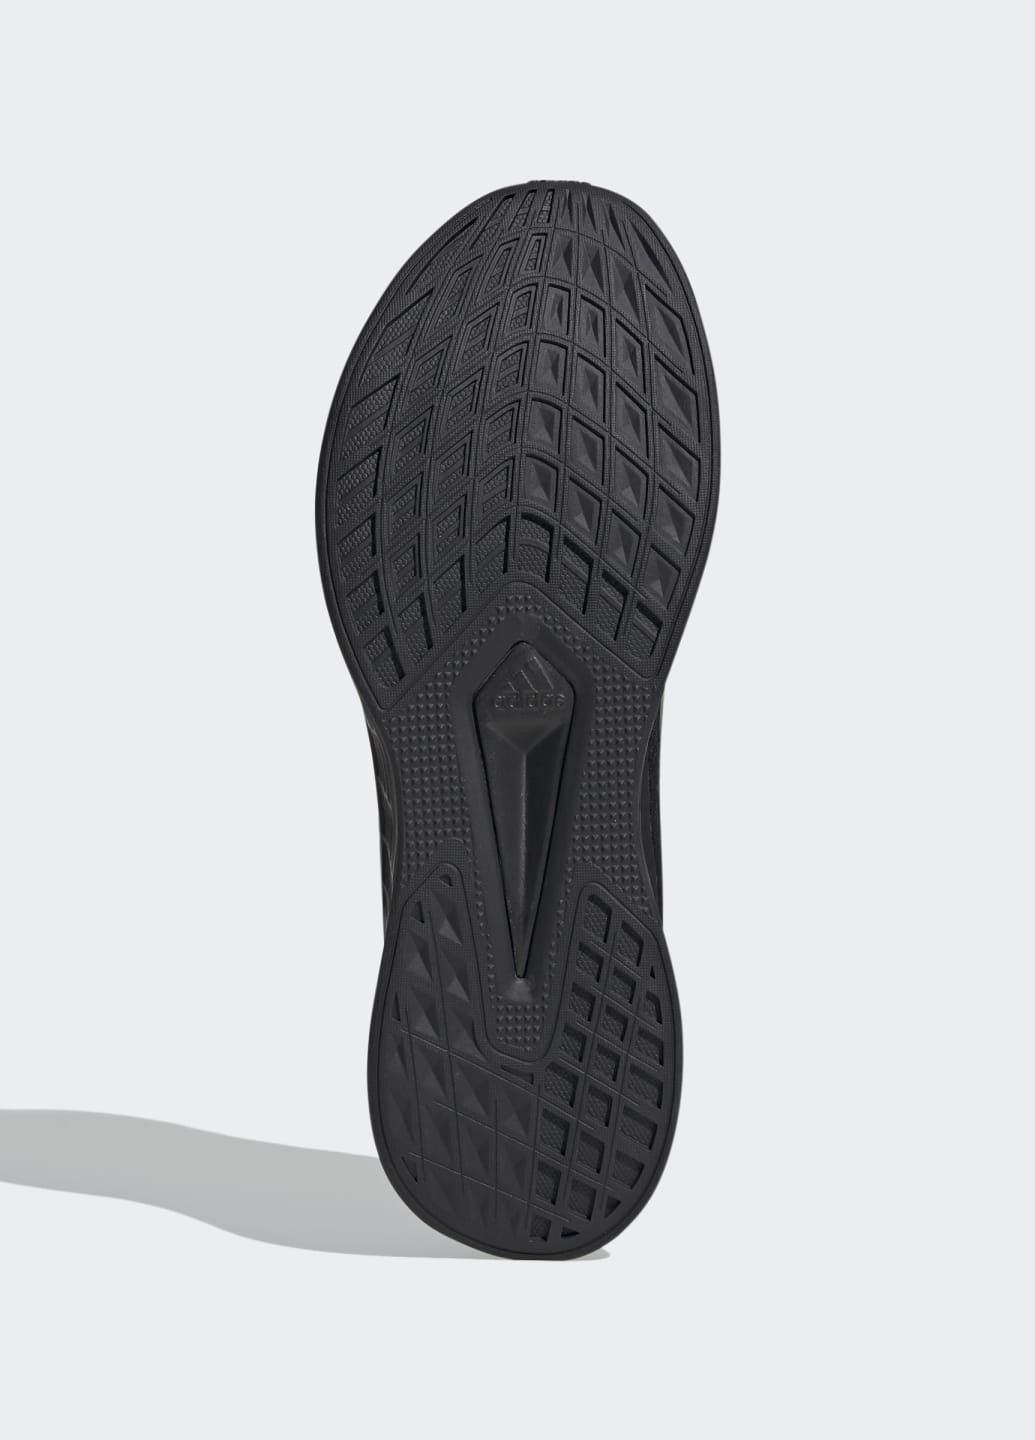 Чорні всесезон кросівки для бігу duramo sl adidas